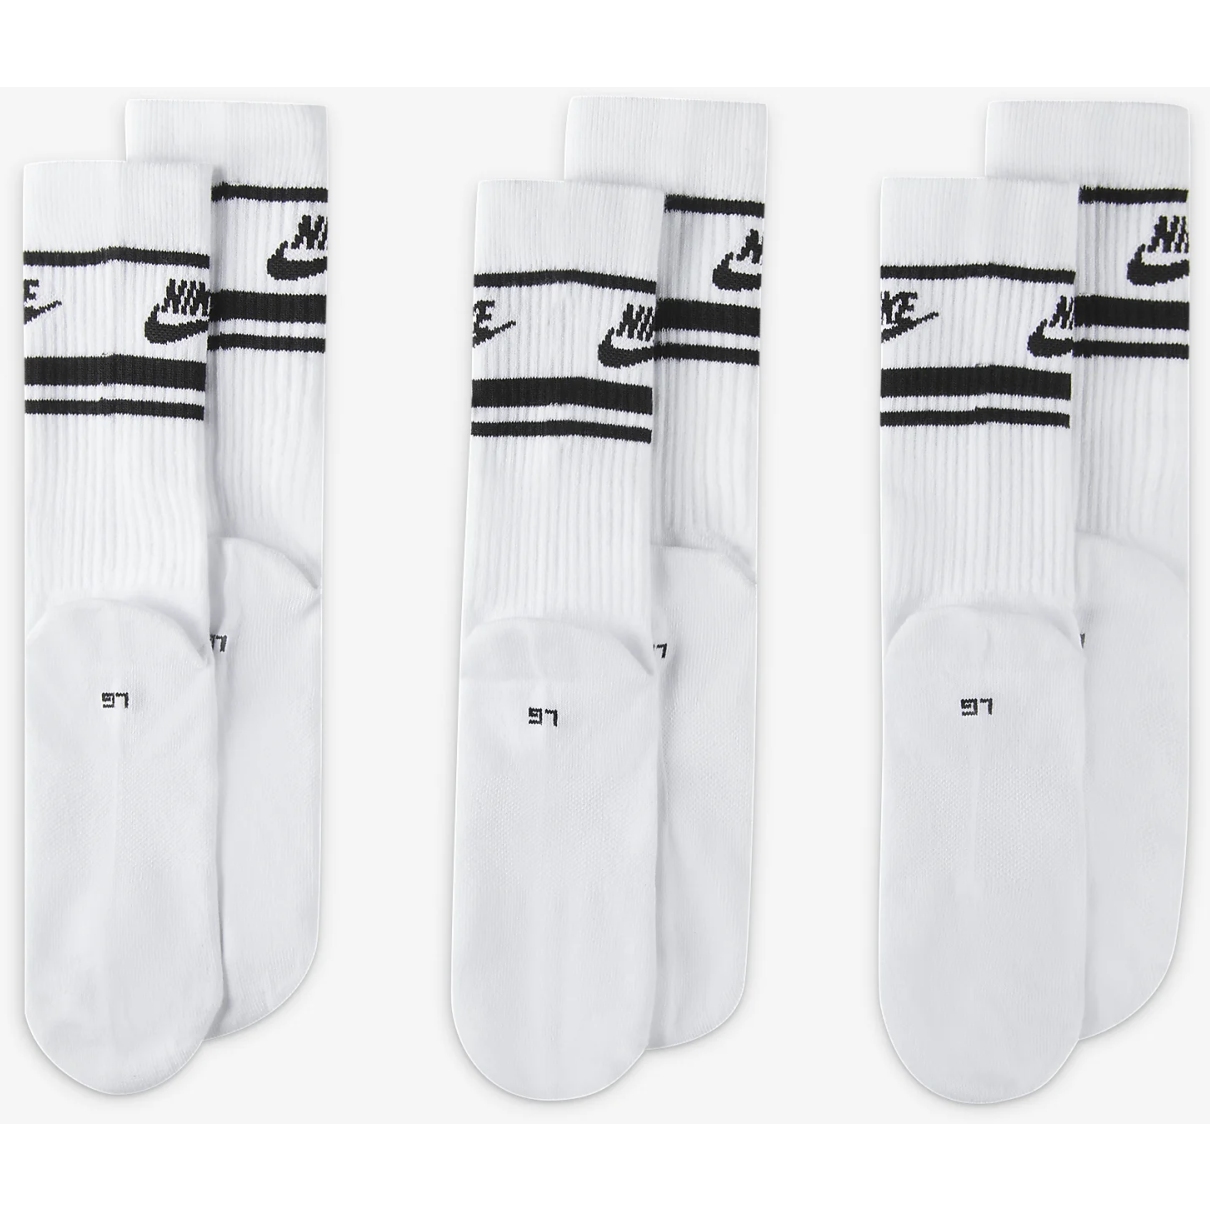 Nike Chaussettes Elite x3 Blanc/noir Taille Chaussettes XL (46-50)